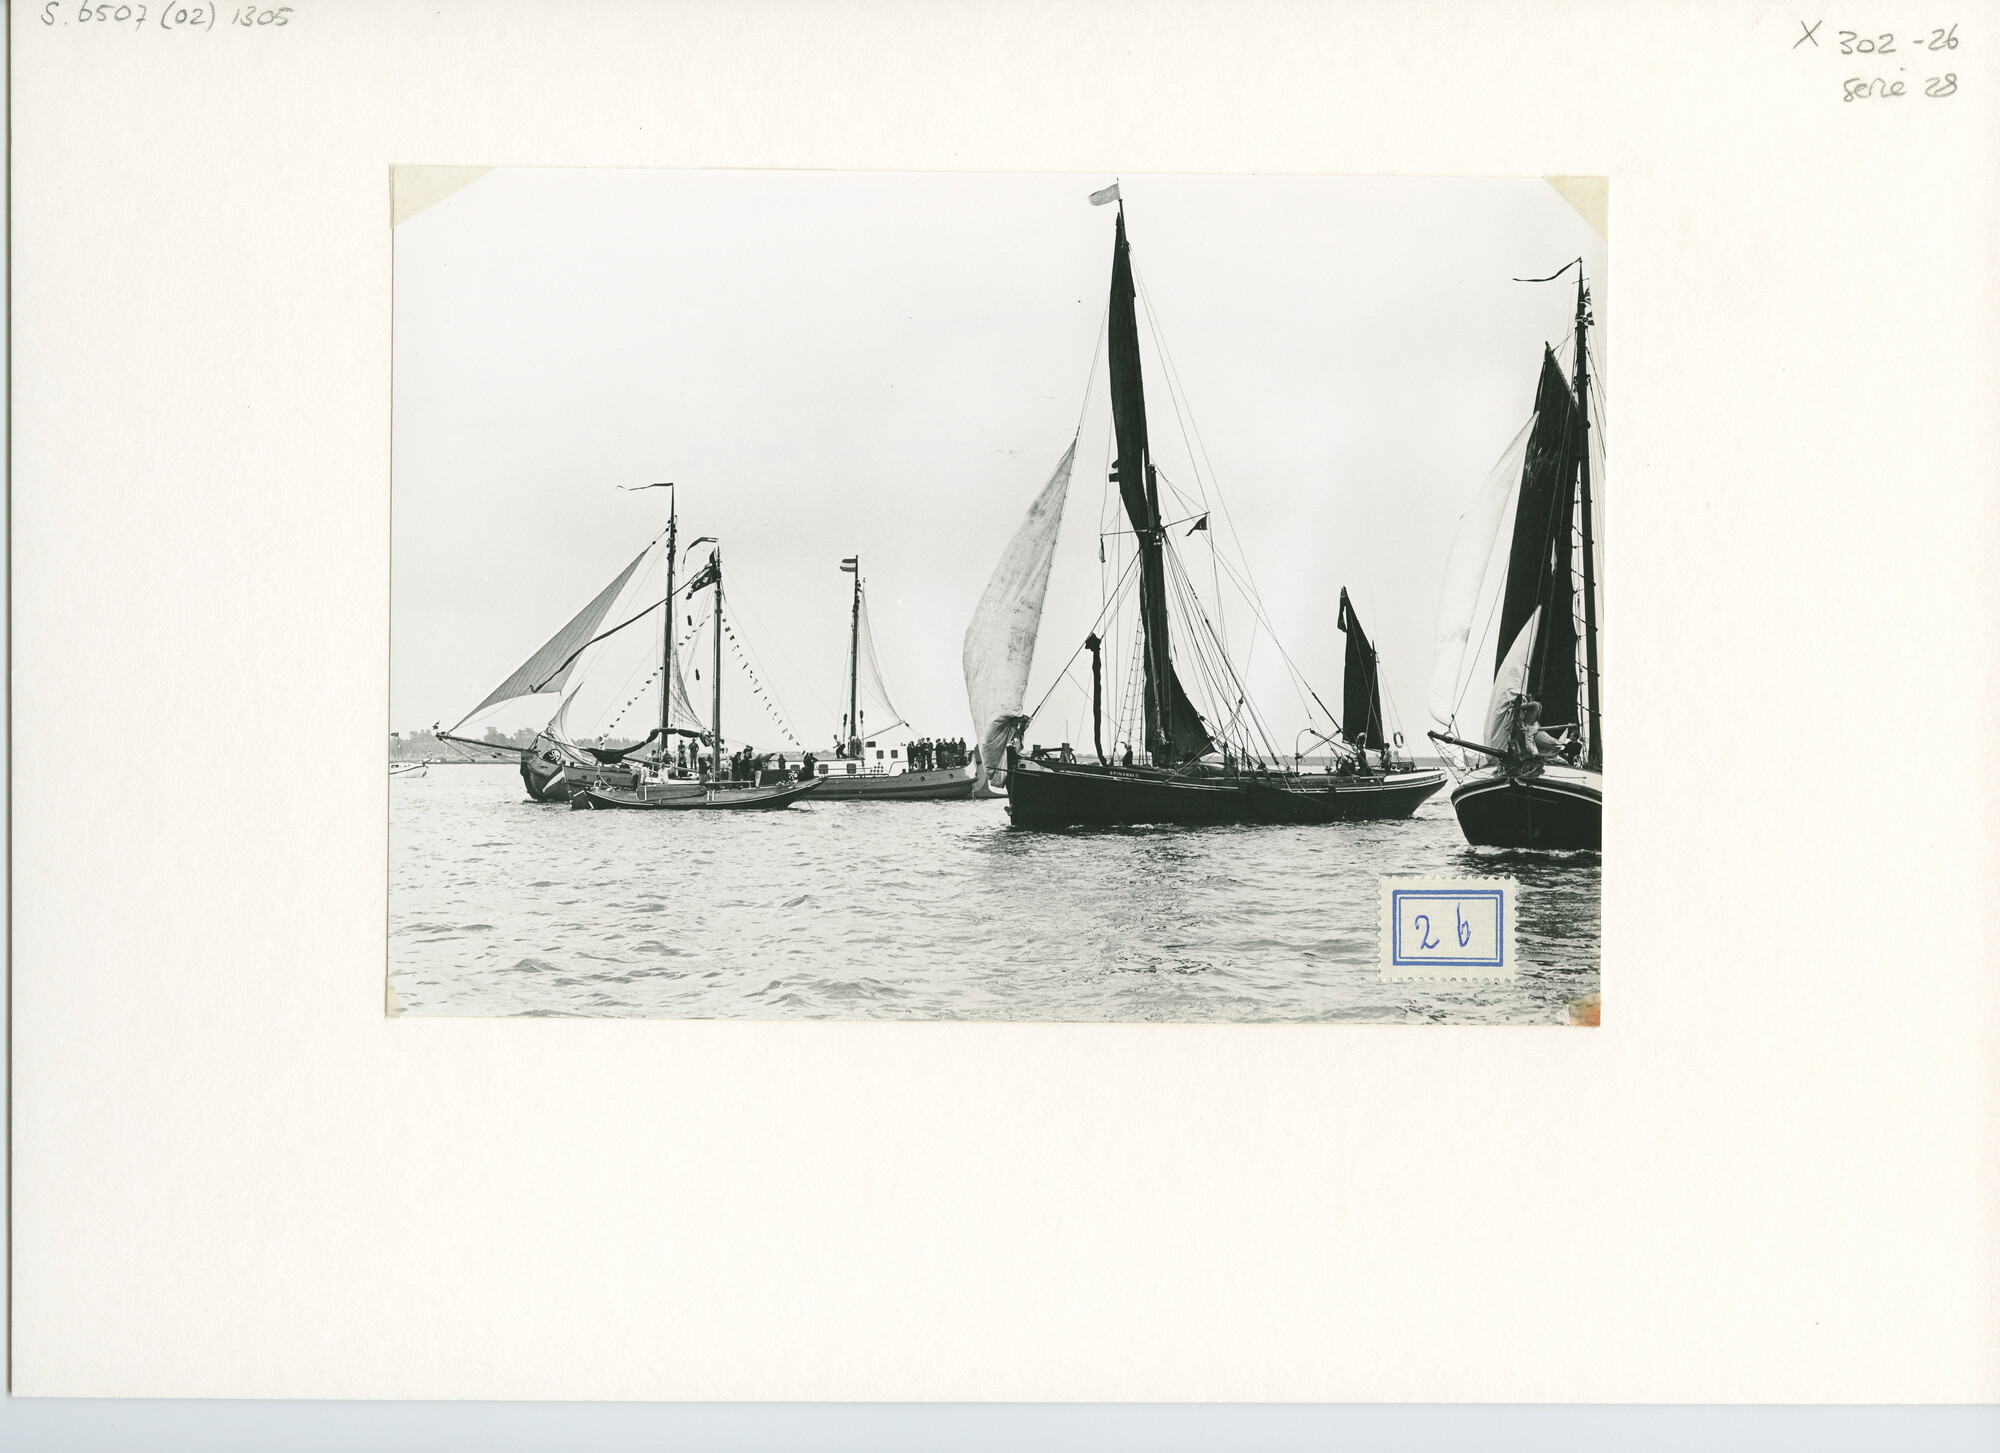 S.6507(02)1305.01; Zwart-wit foto van de reünie van ronde en platbodemjachten te Willemstad; foto